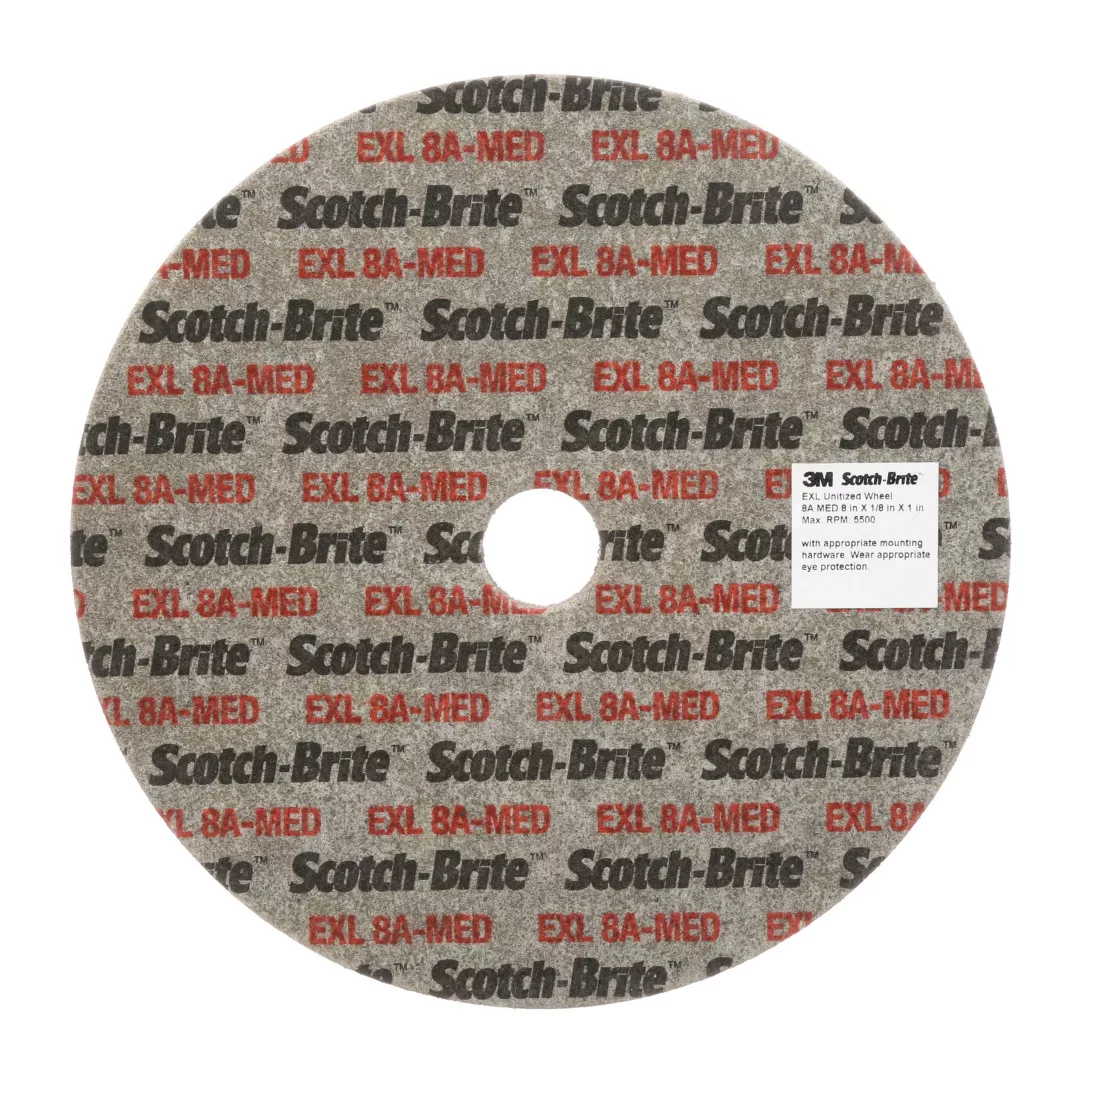 Scotch-Brite™ EXL Unitized Wheel, 2 in x 1/16 in x 1/8 in 8A MED, 60
ea/Case, SPR 022743A